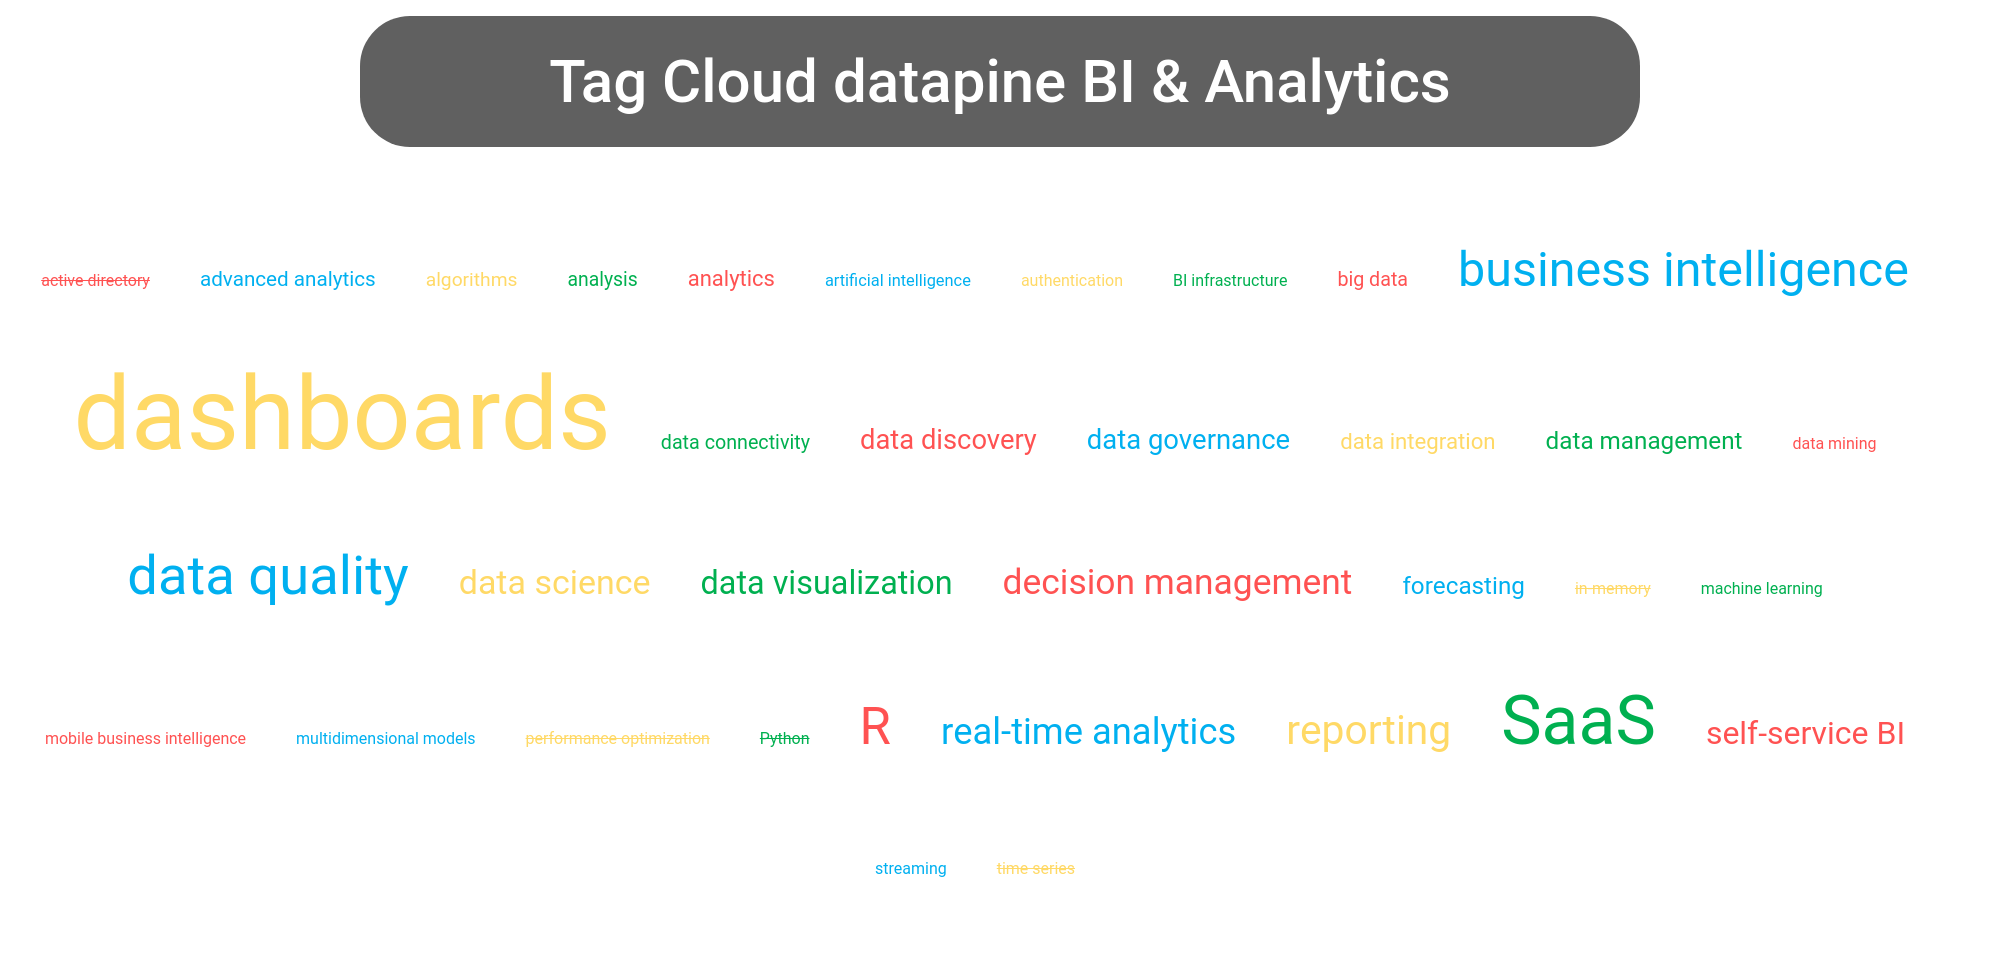 Tag cloud of the datapine BI tools.